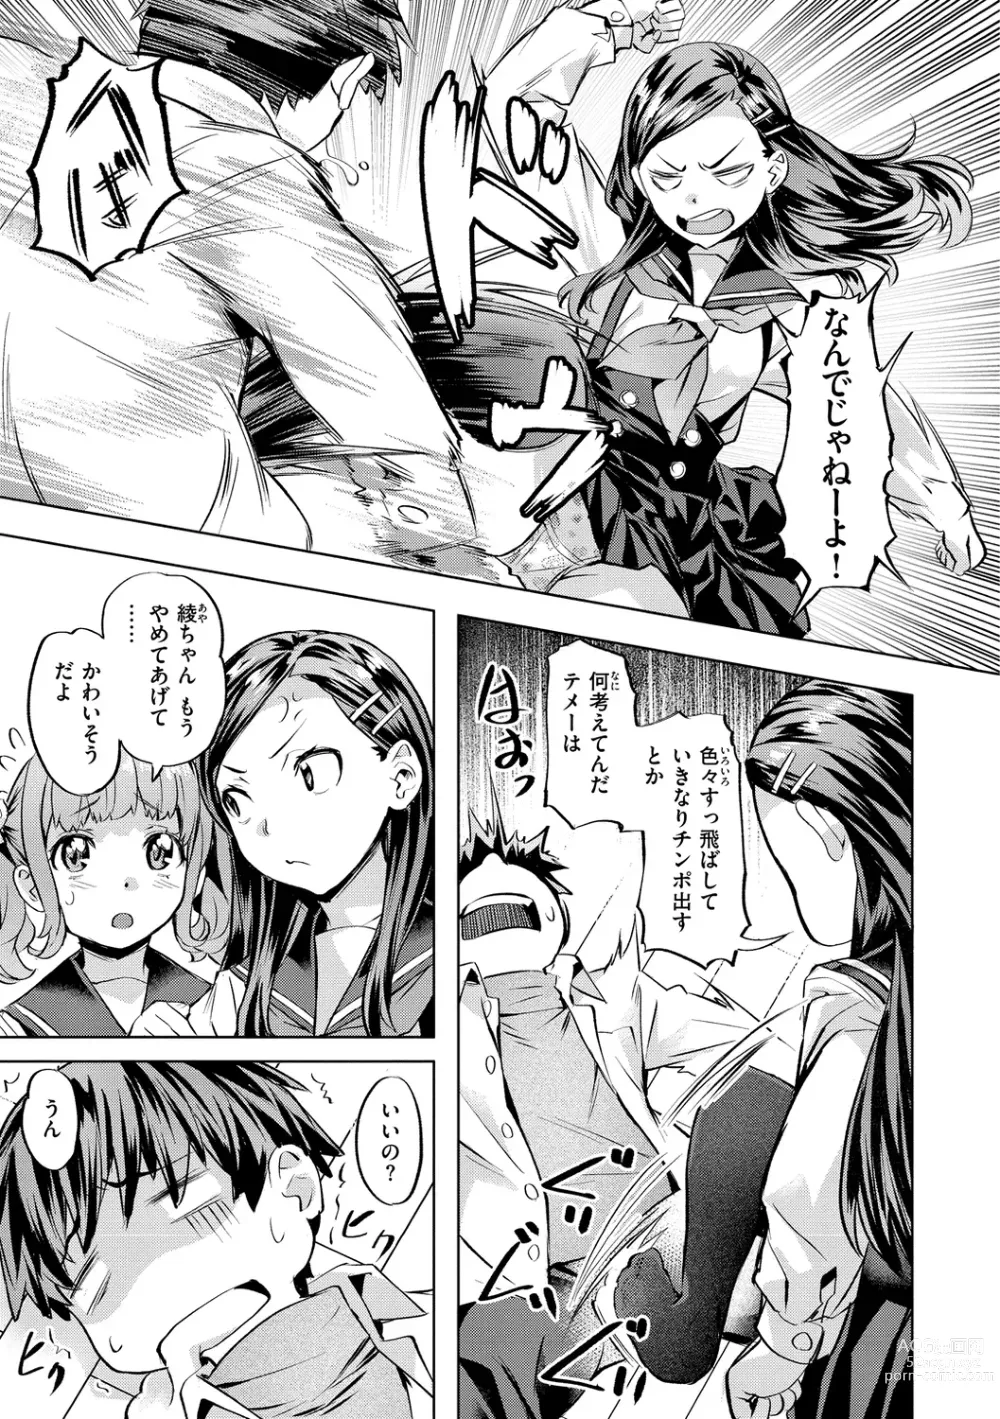 Page 33 of manga Binetsu Emotion - Sensual Emotion